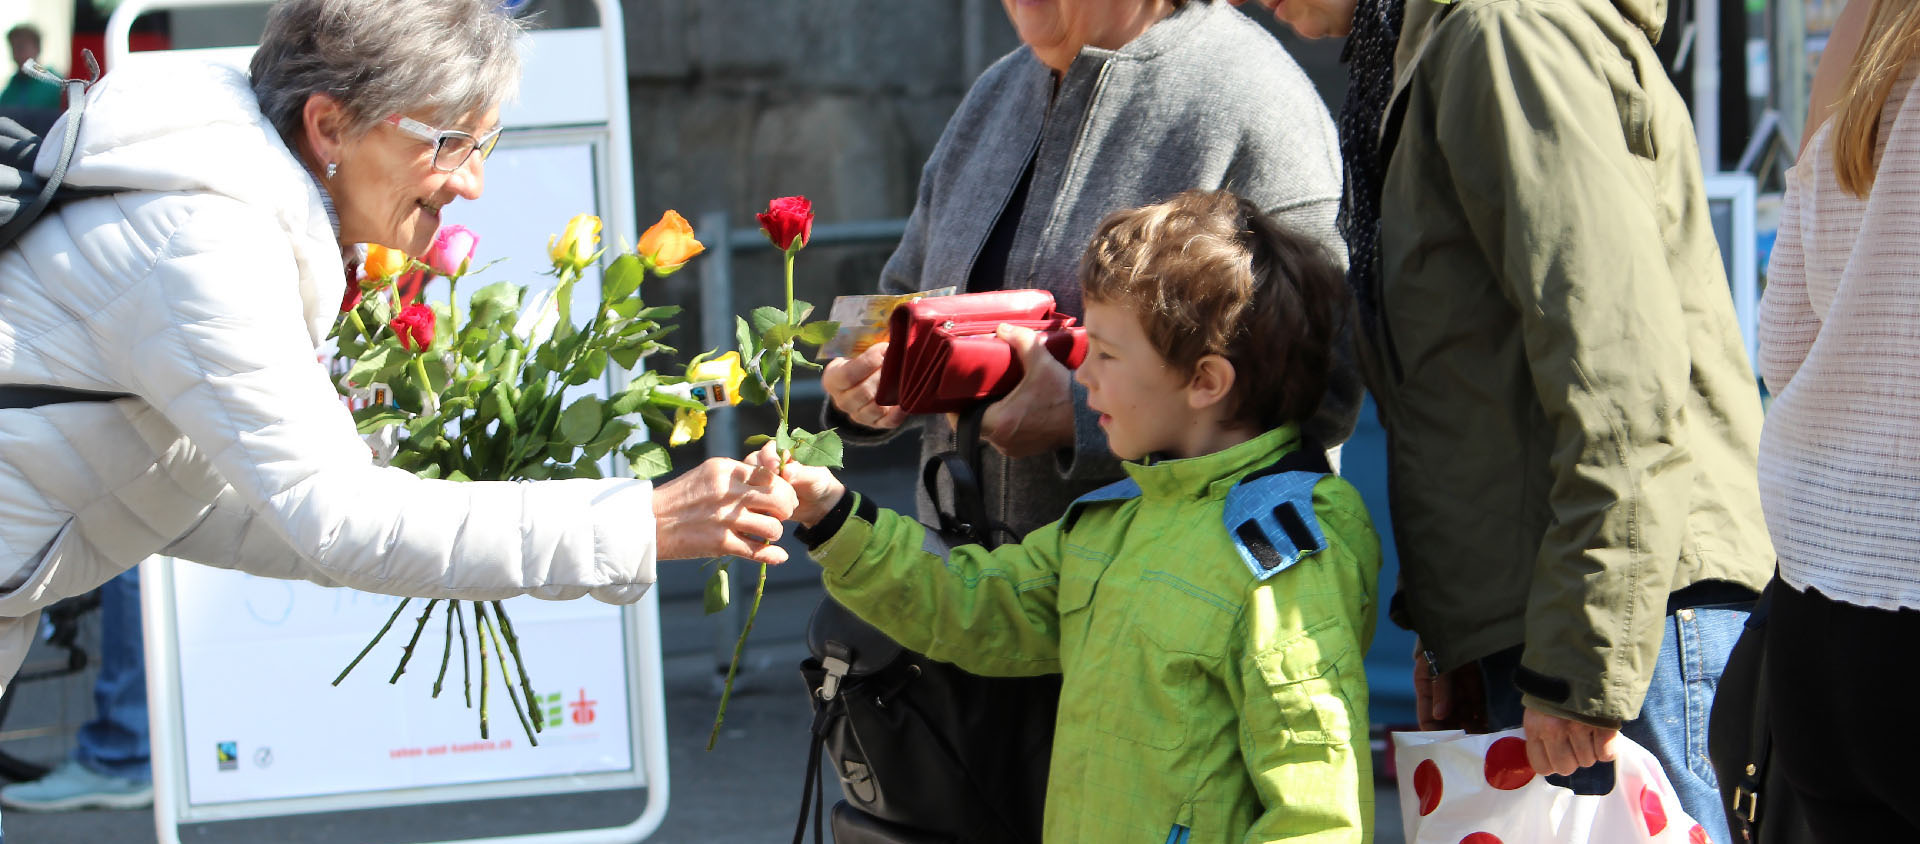 Les roses vendues sont issues du commerce équitable | © Campagne oecuménique de Carême/Flickr